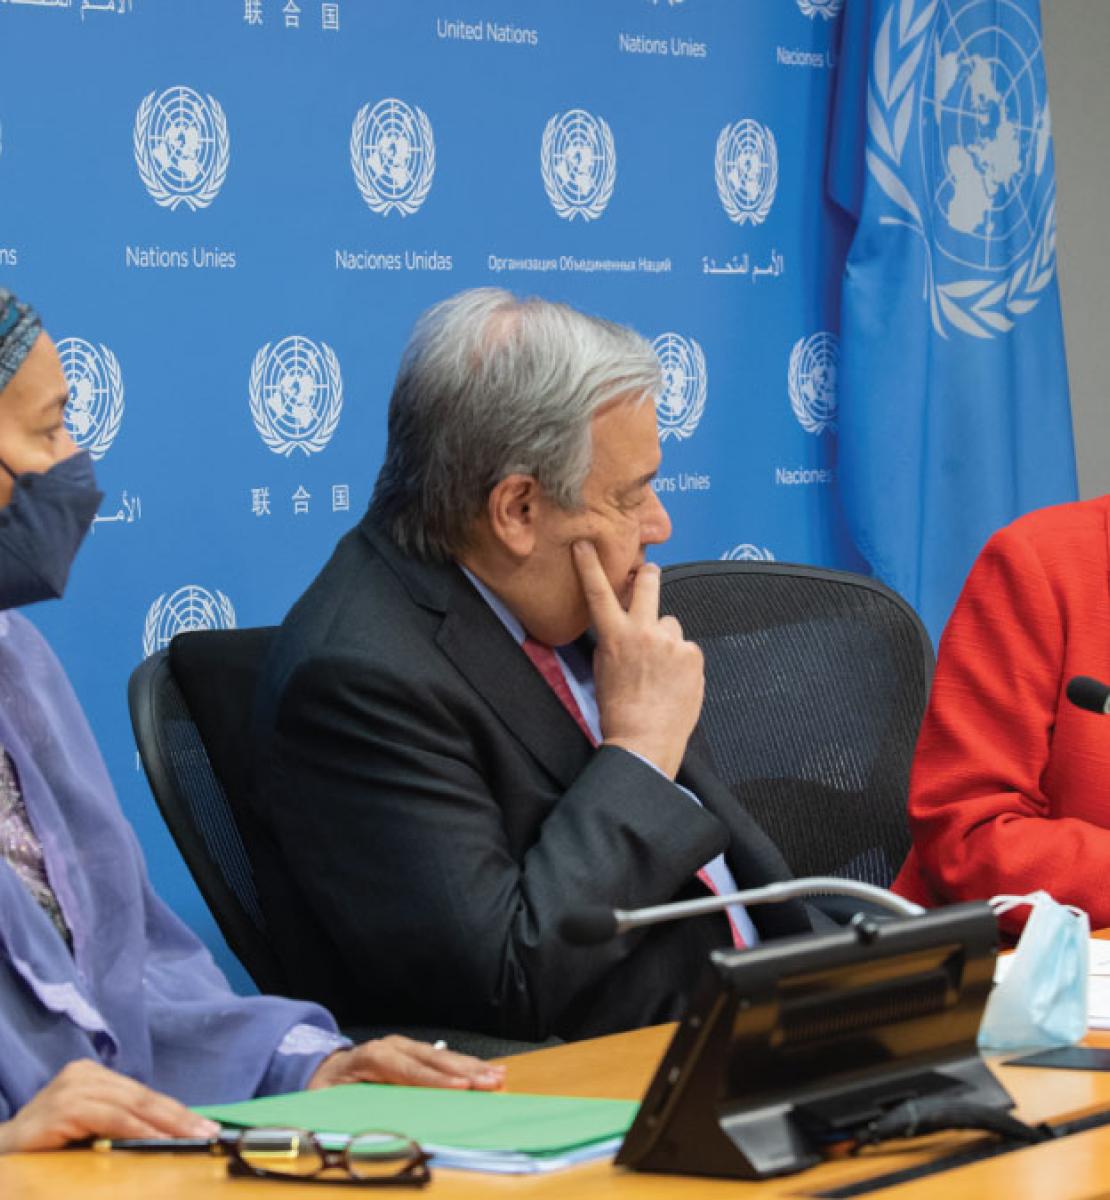 Un hombre, el Secretario General de la ONU, se sienta entre dos mujeres en medio de una animada discusión. Se aprecia una bandera la ONU y el logotipo de la ONU detrás de los presentes.